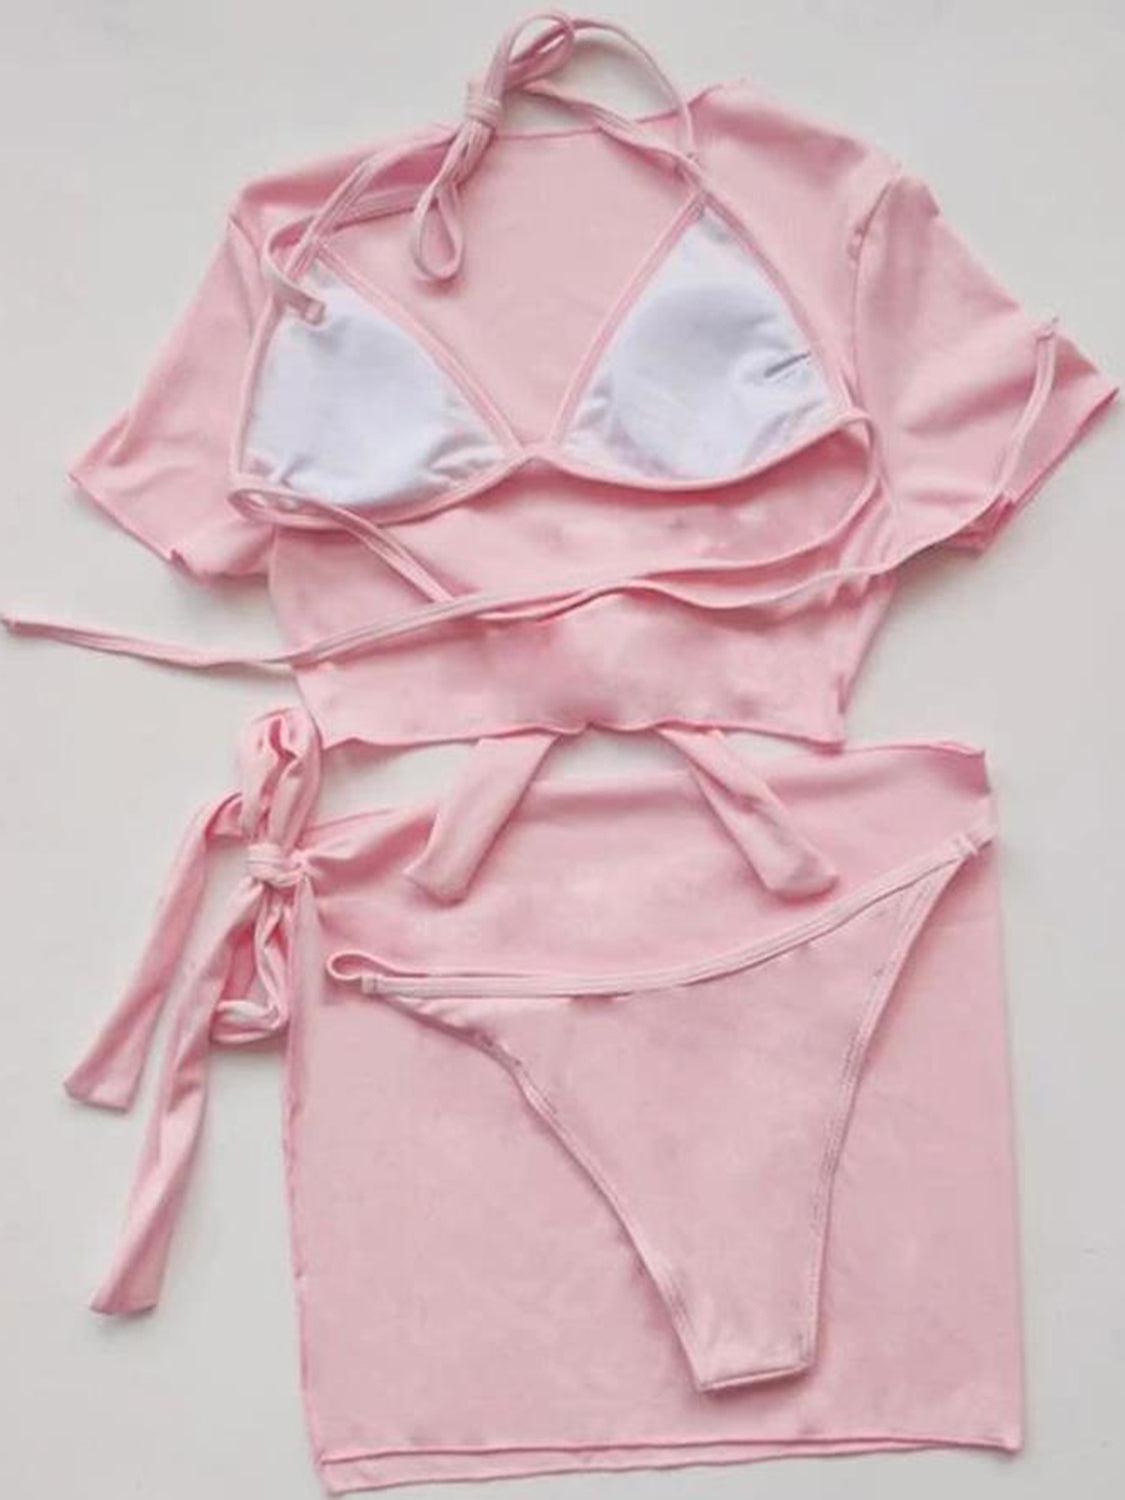 a women's pink bikini top and panties